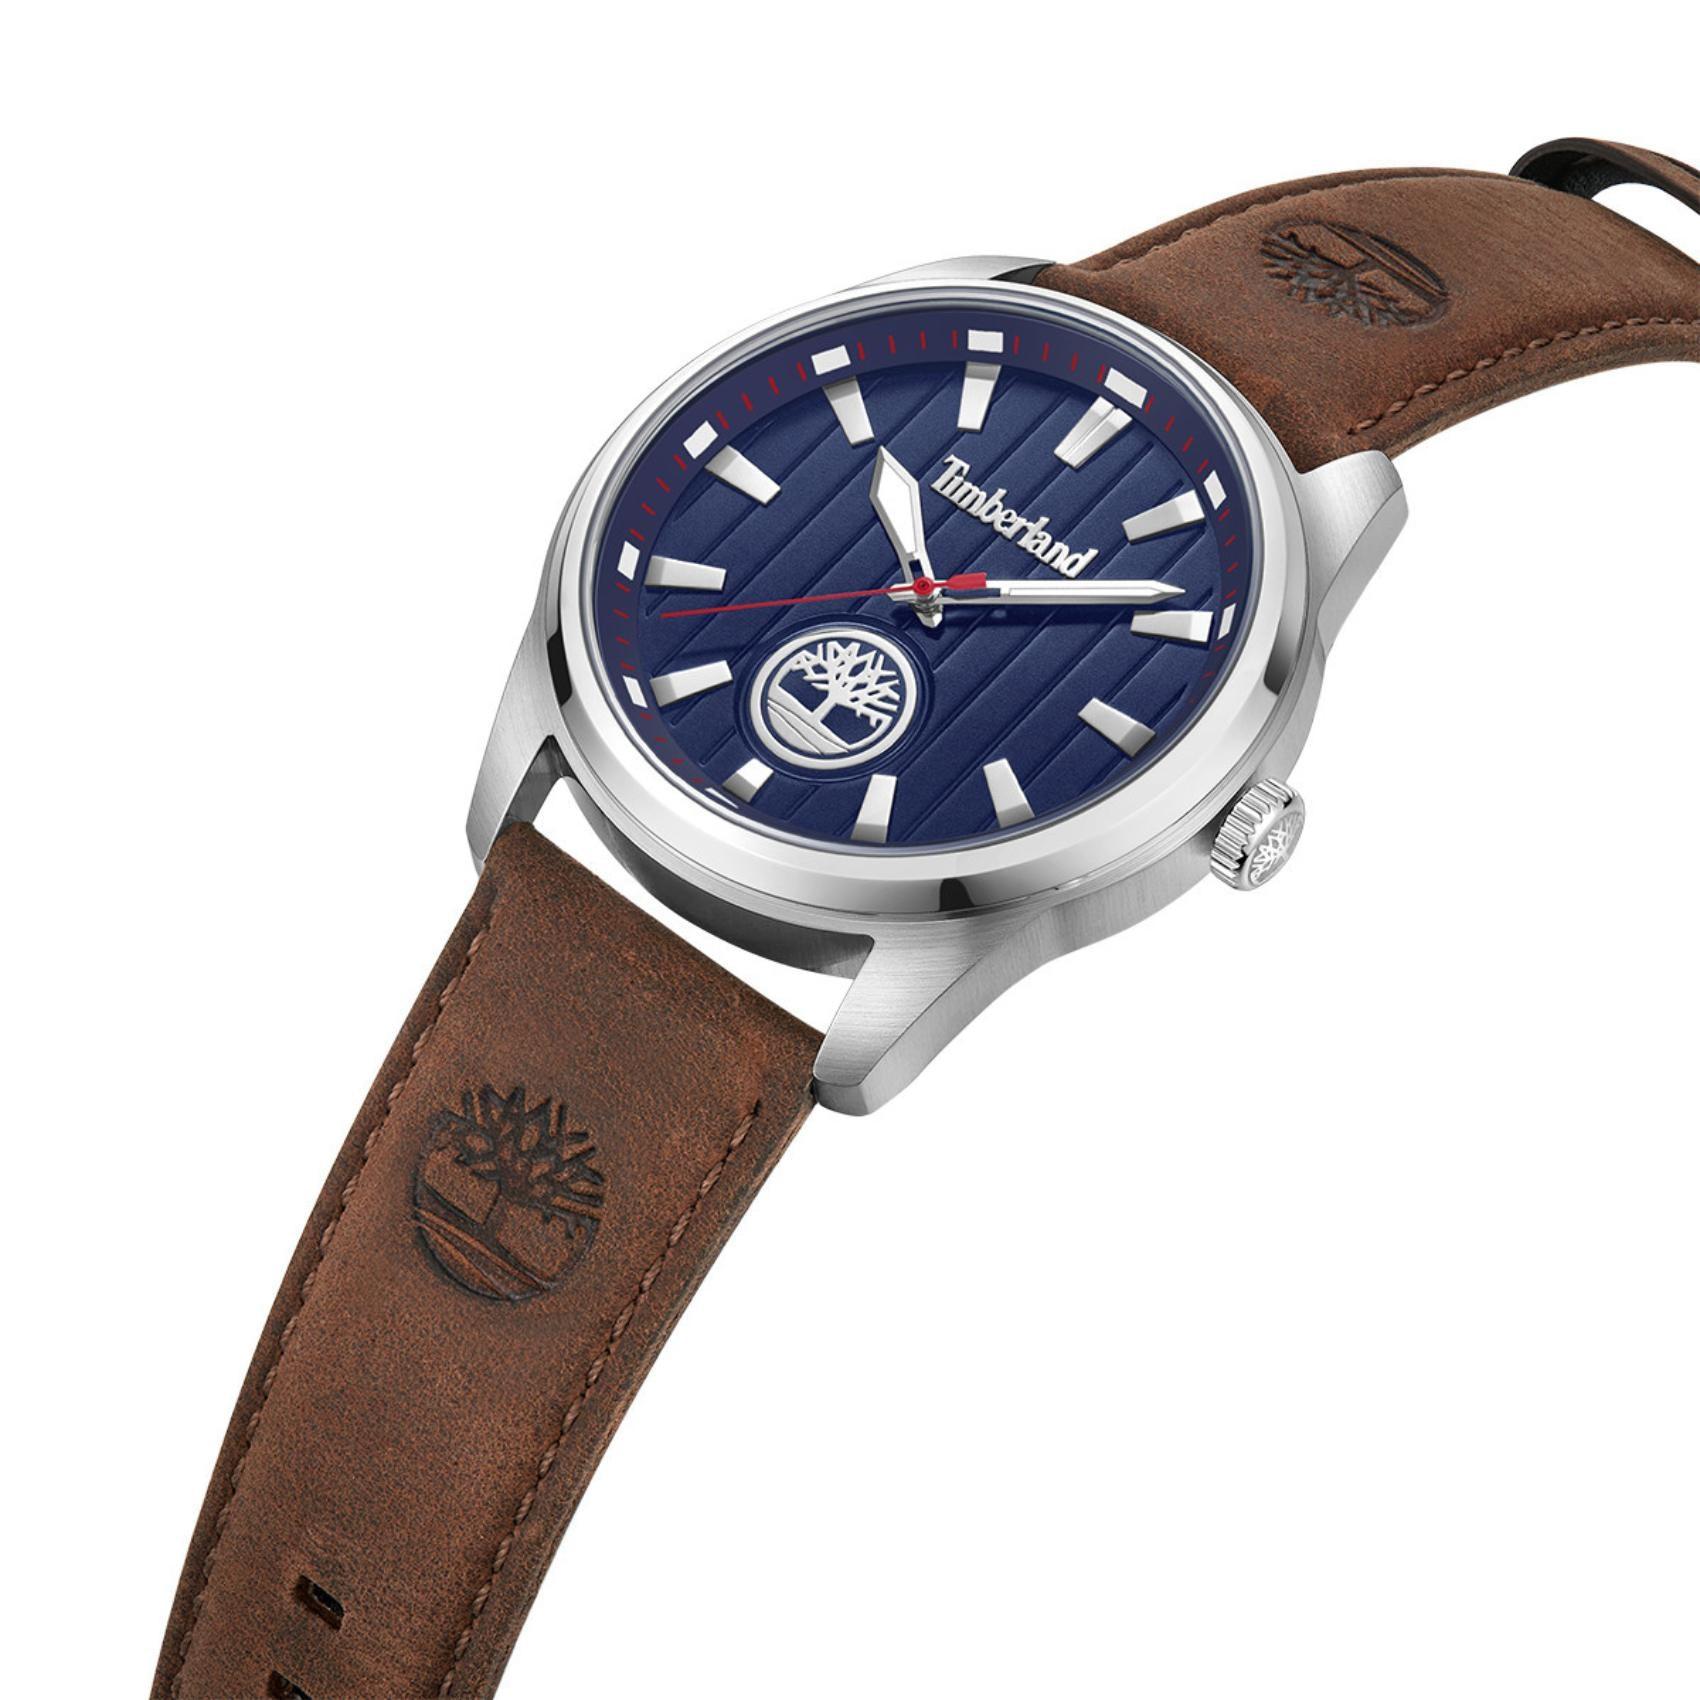 Ρολόι Timberland Northbridge TDWGA0010203 με καφέ δερμάτινο λουρί, μπλε καντράν και κάσα διαμέτρου 45mm.